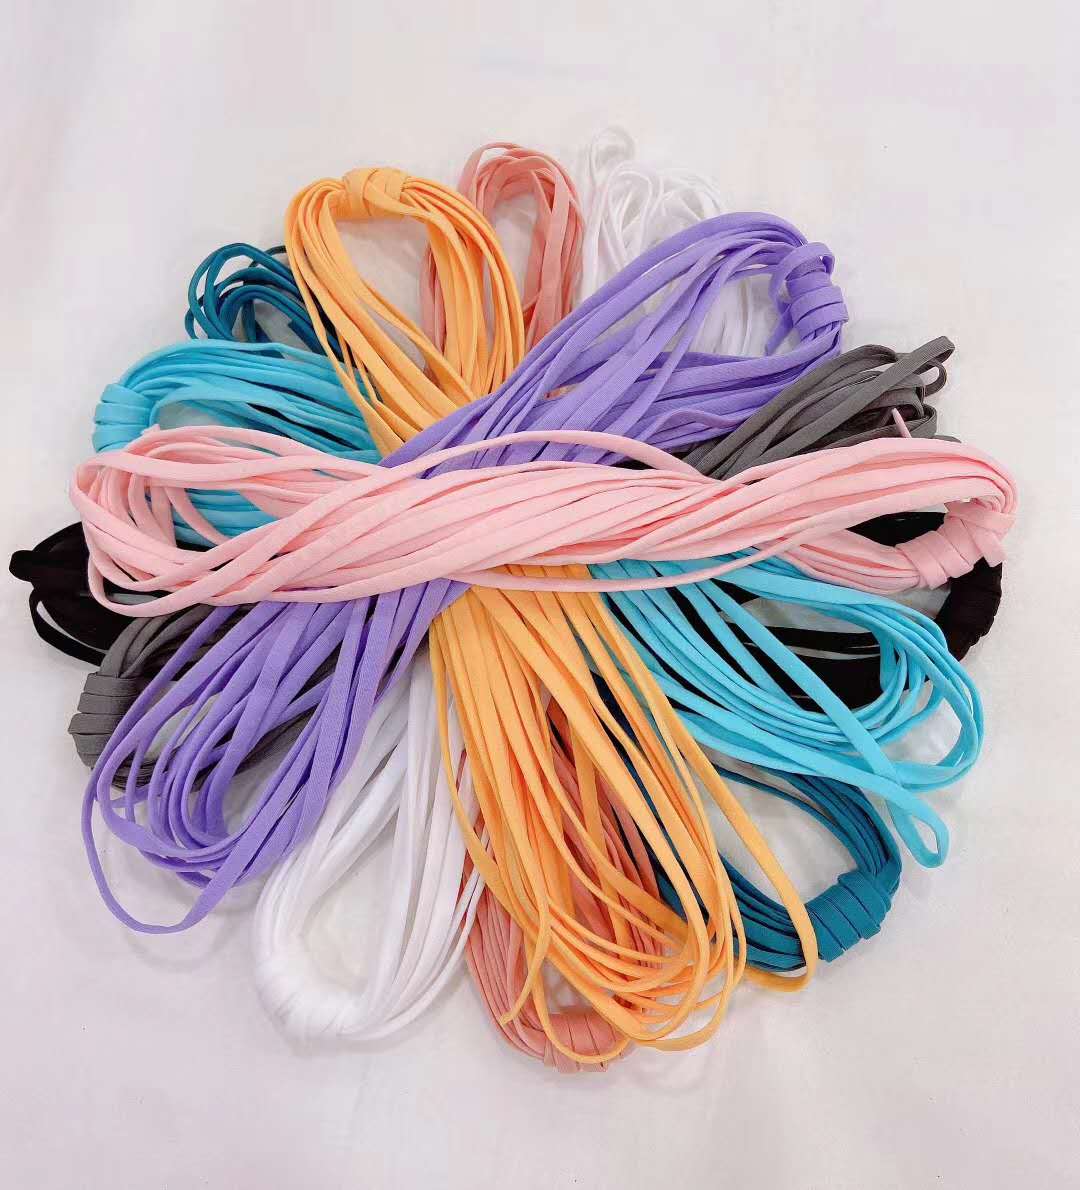 色条纹尼龙织带,口罩耳带绳,七彩织带,印刷织带,松紧带,花边带,绳类织带,编织带,特殊织带